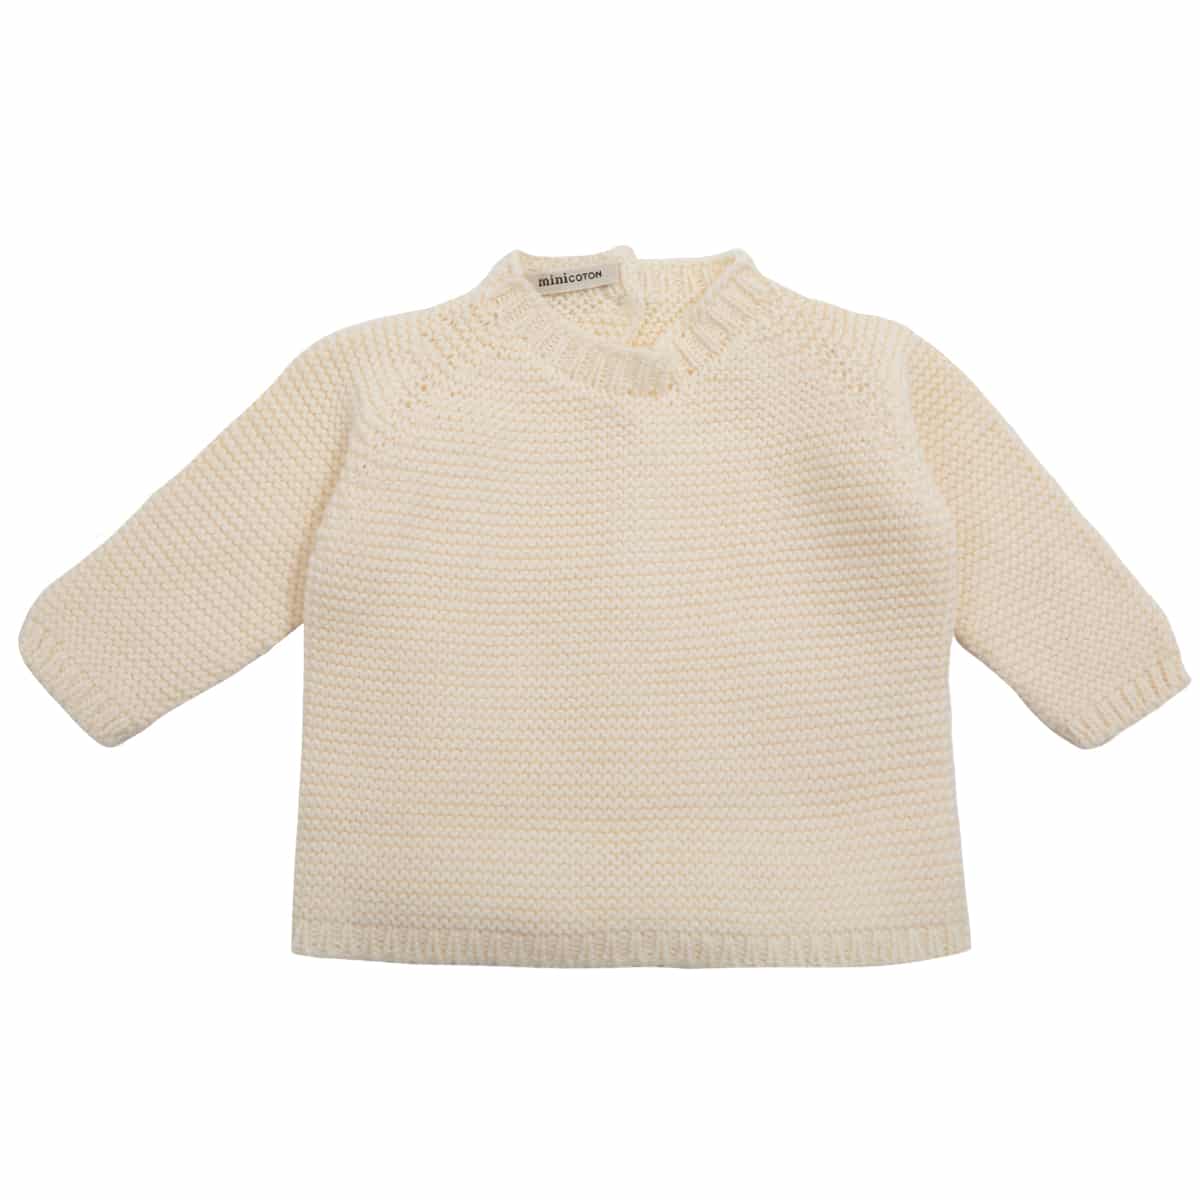 Pullover APRIL Ecru - Größe 3 (12 Monate)